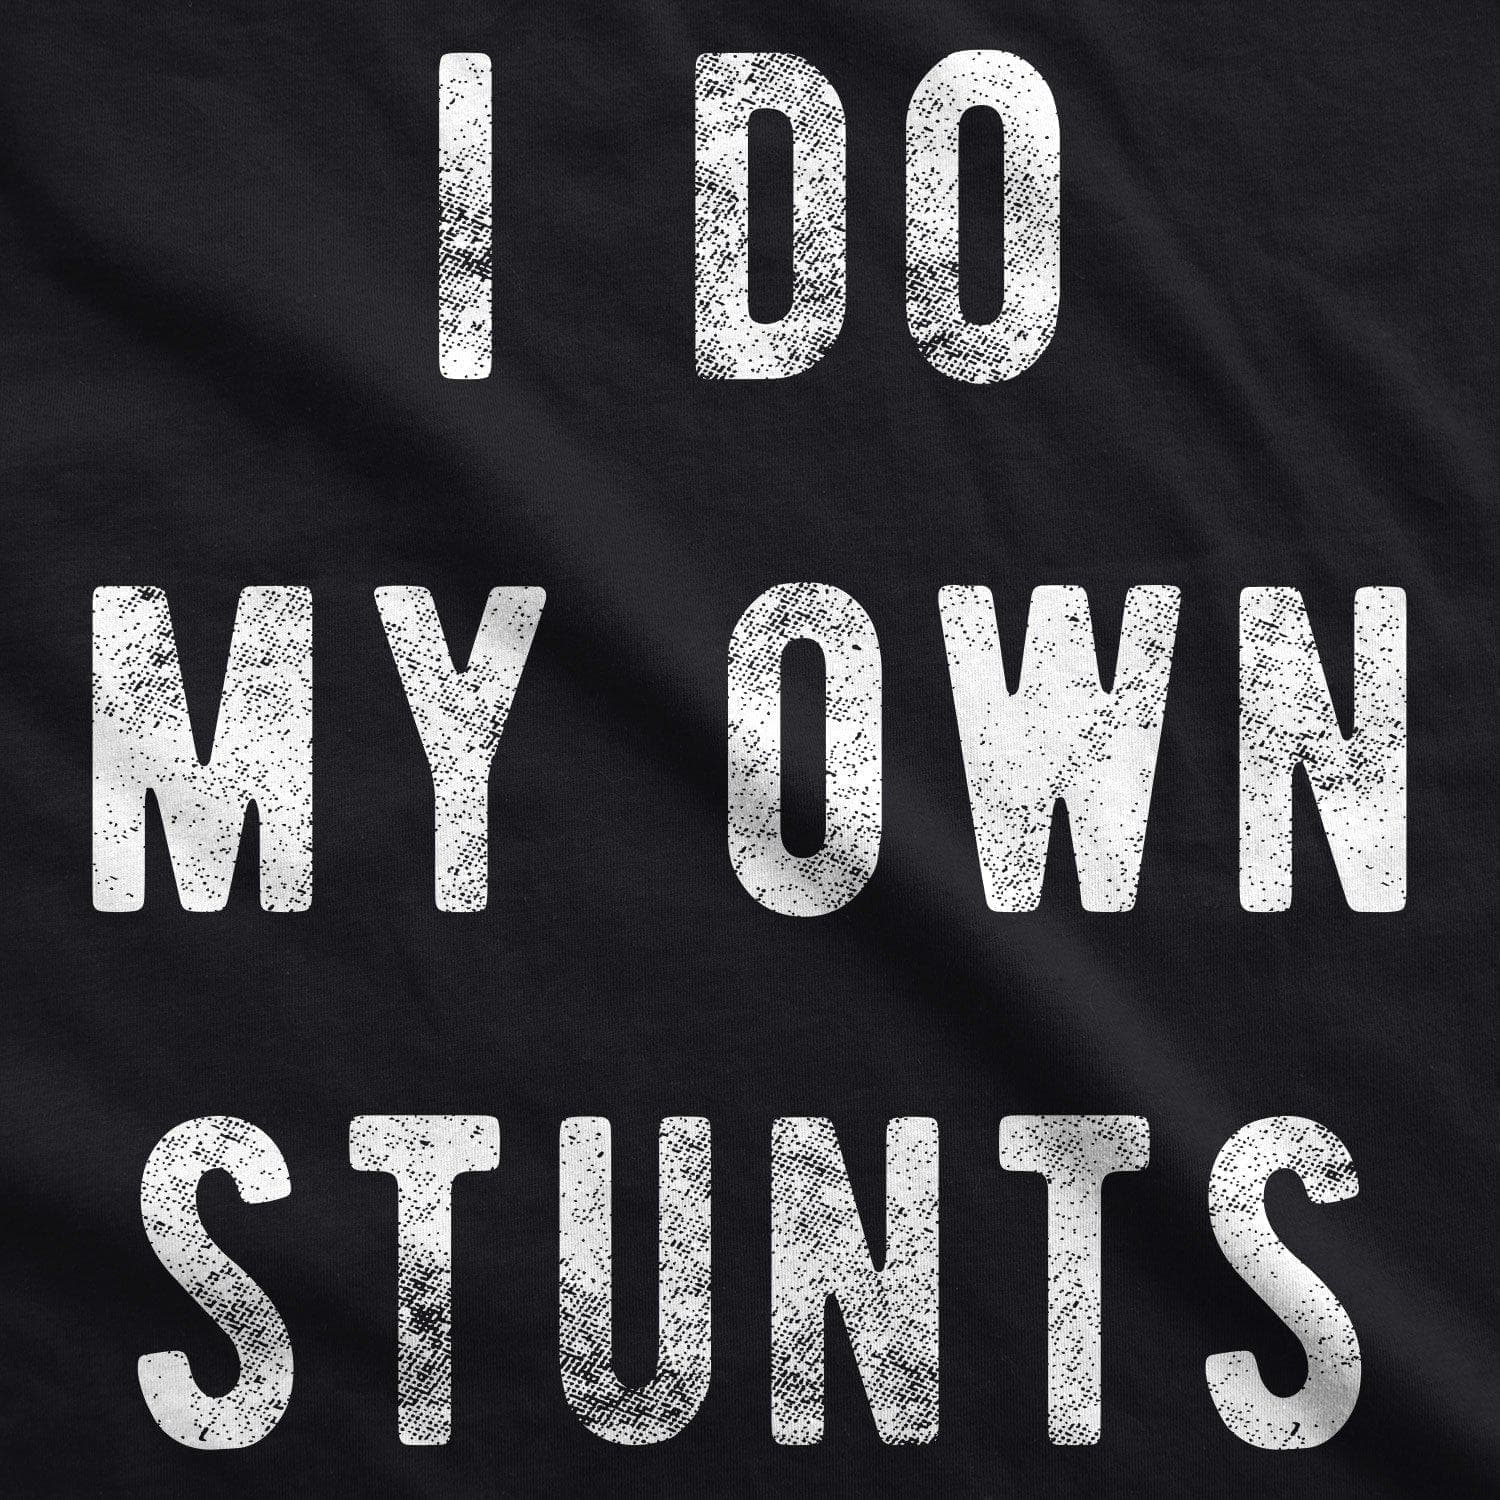 I Do My Own Stunts Men's Tshirt - Crazy Dog T-Shirts